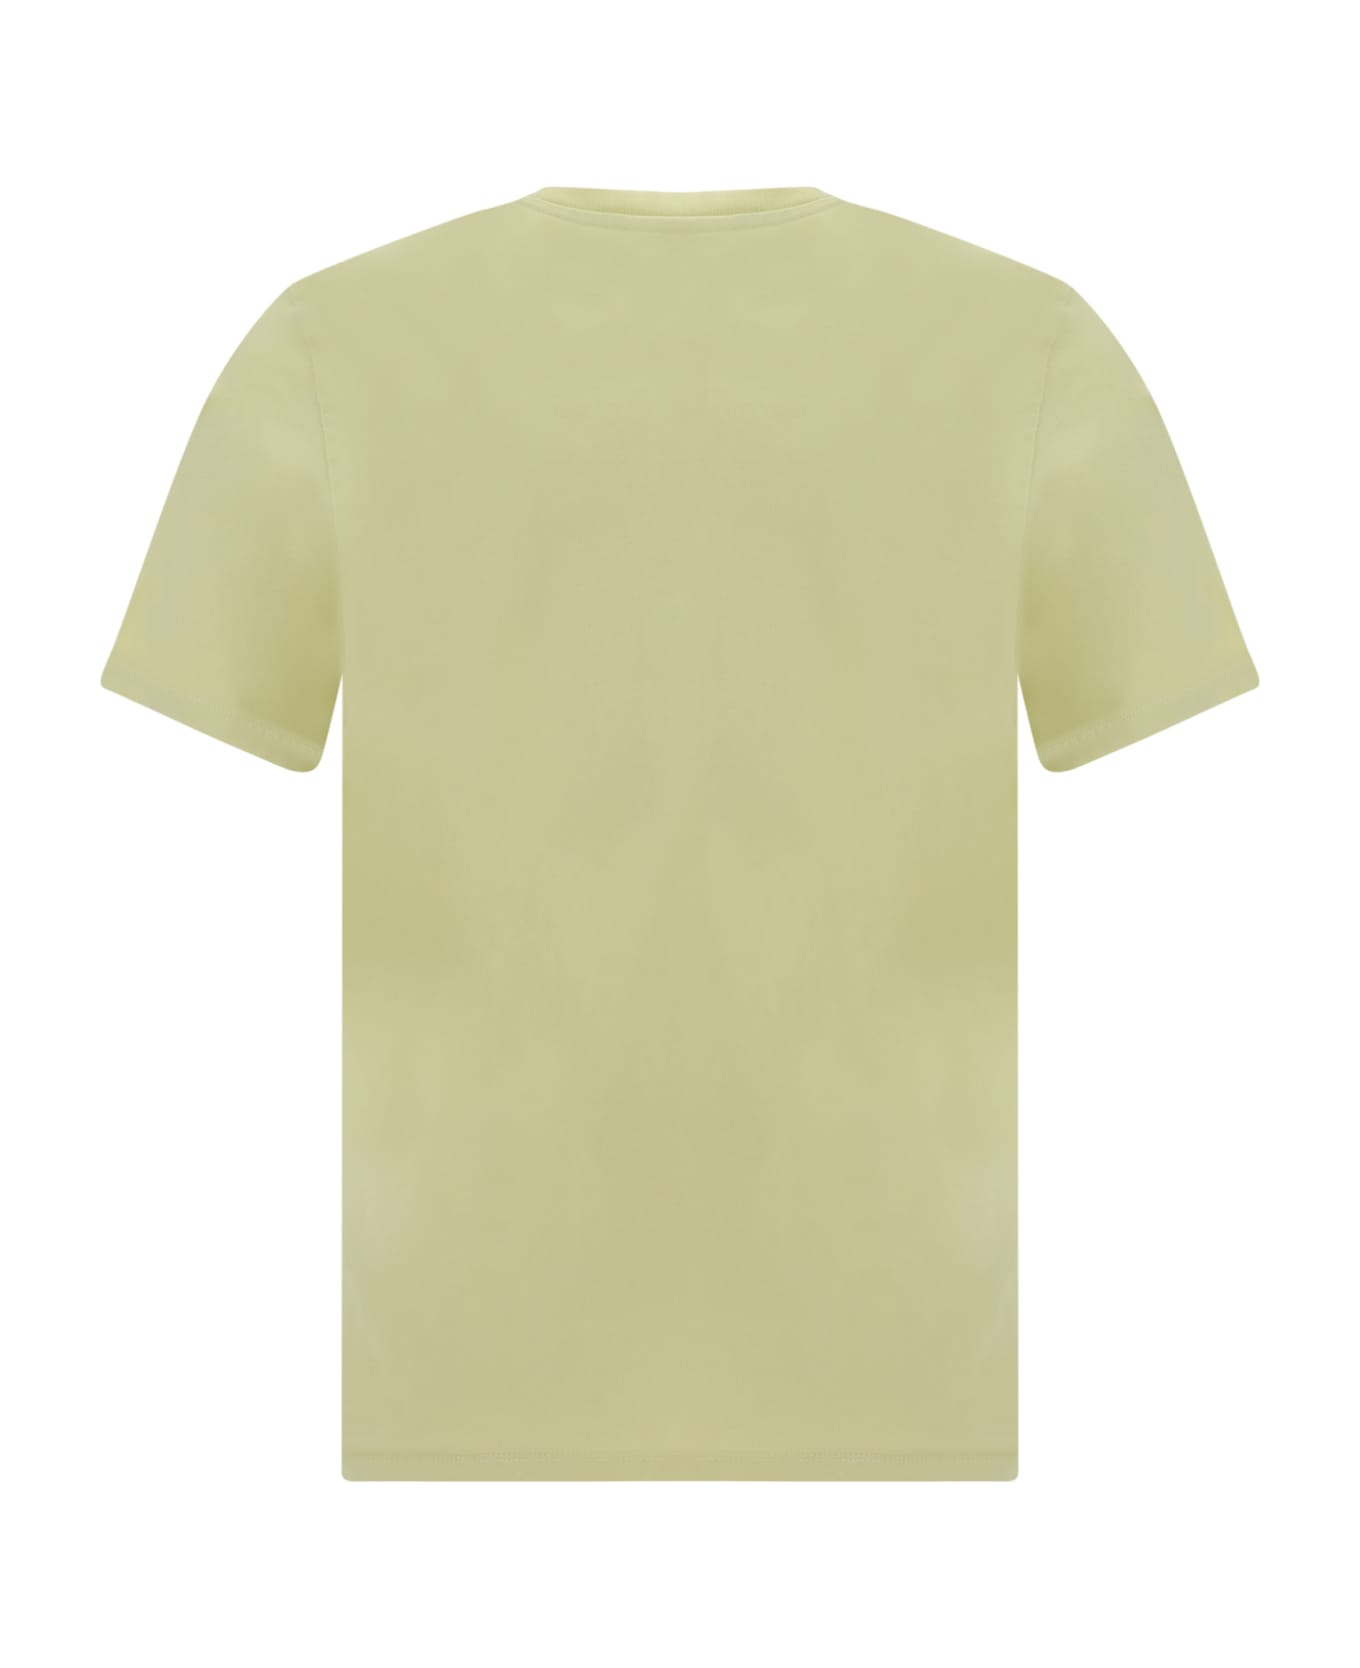 Maison Kitsuné T-shirt - Chalk yellow シャツ